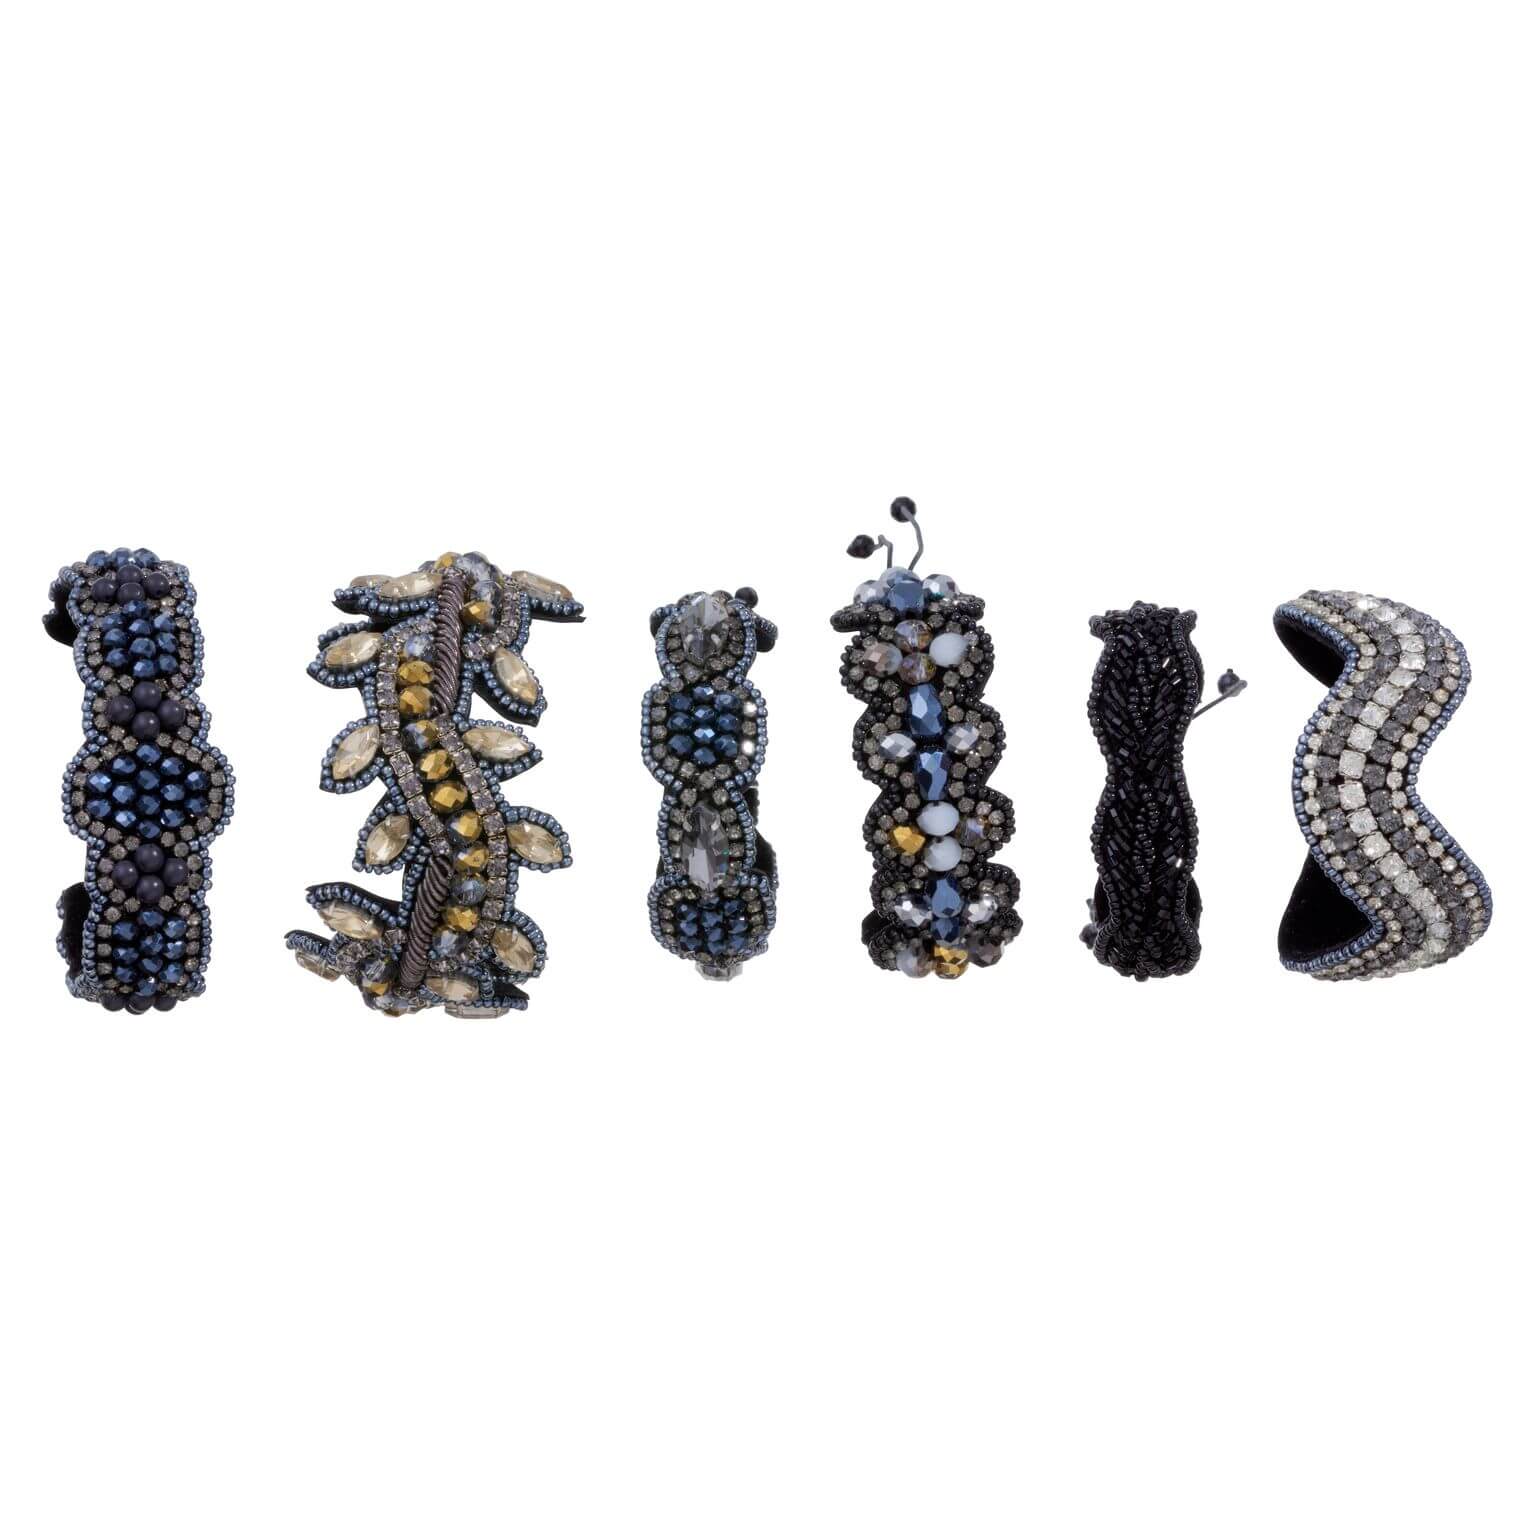 Freisteller verschiedener Armbänder in unterschiedlichen Farben mit vielen Perlen verziert